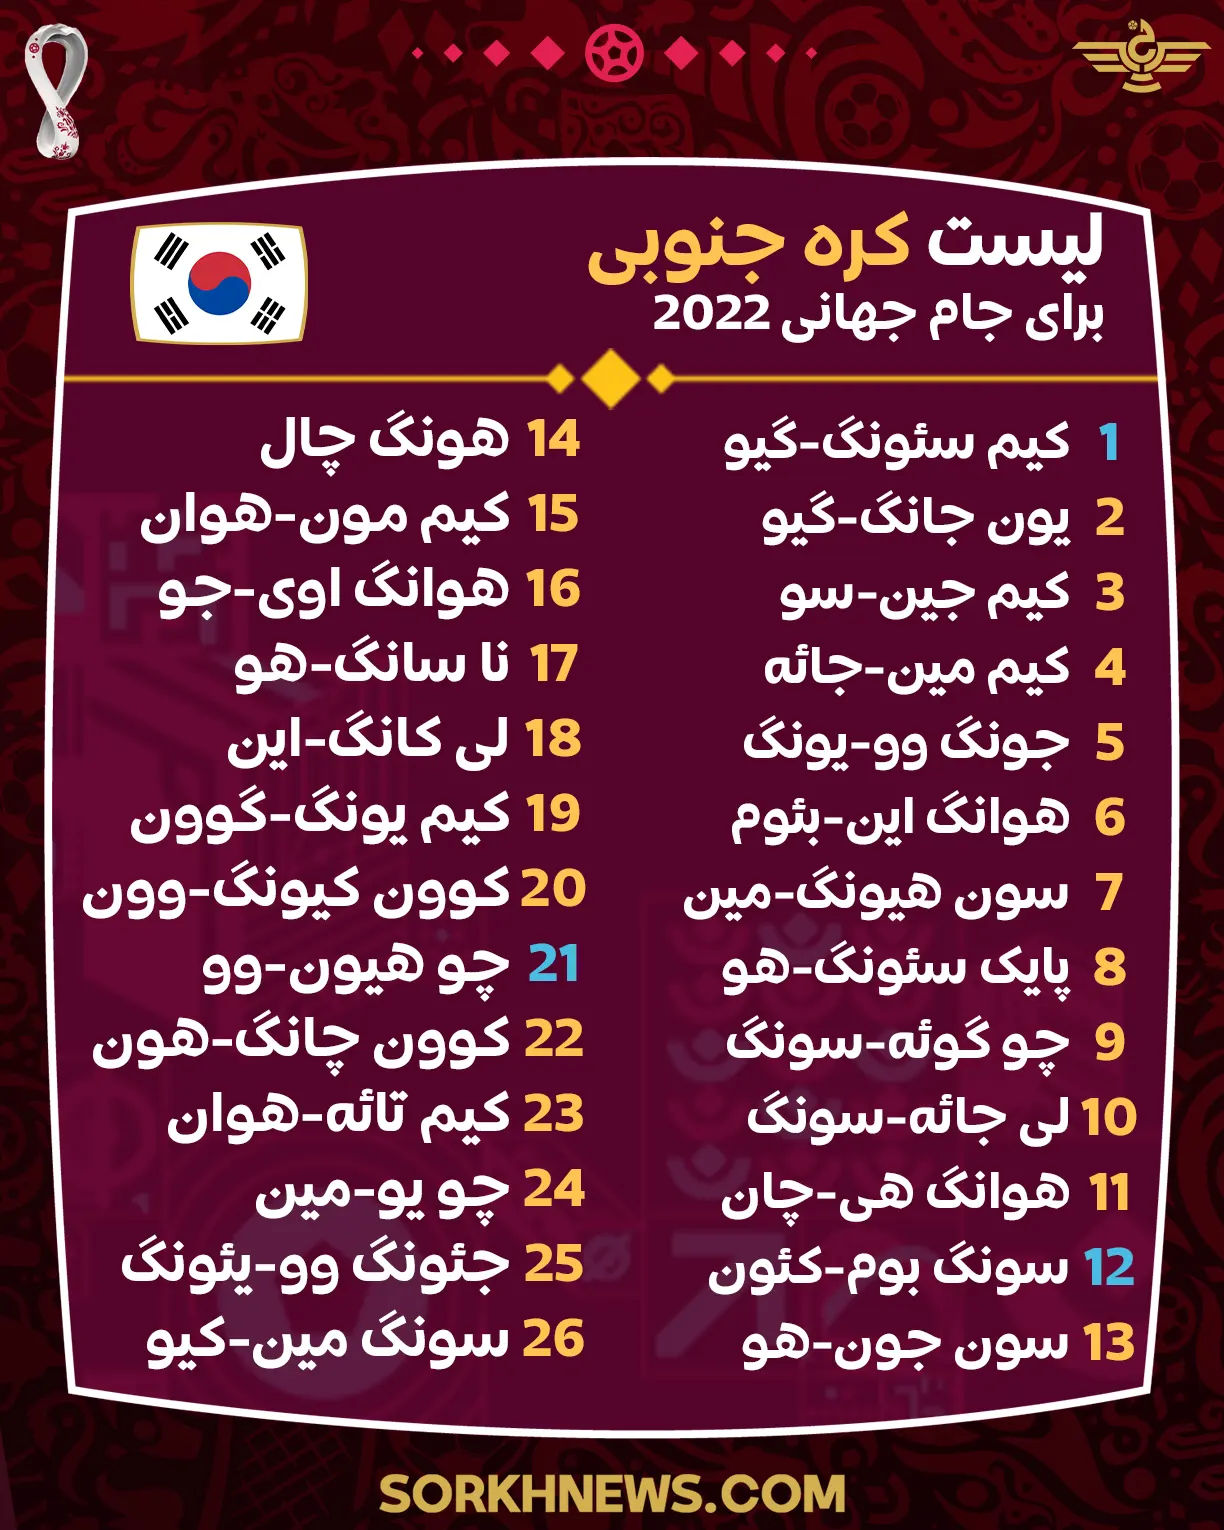 لیست تیم ملی کره جنوبی برای جام جهانی 2022